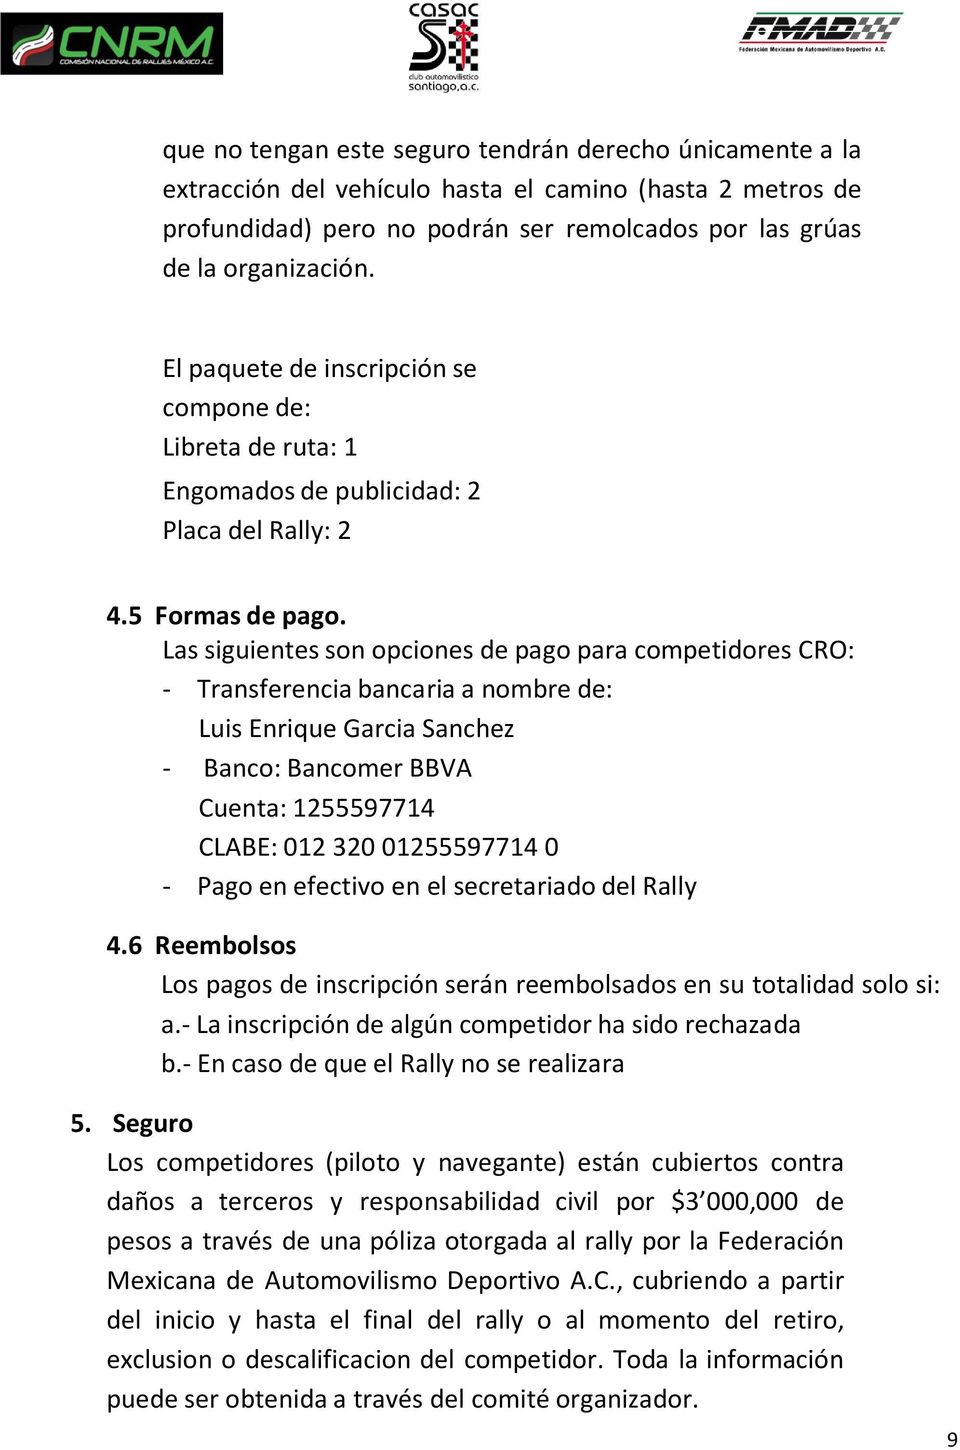 Las siguientes son opciones de pago para competidores CRO: - Transferencia bancaria a nombre de: Luis Enrique Garcia Sanchez - Banco: Bancomer BBVA Cuenta: 1255597714 CLABE: 012 320 01255597714 0 -